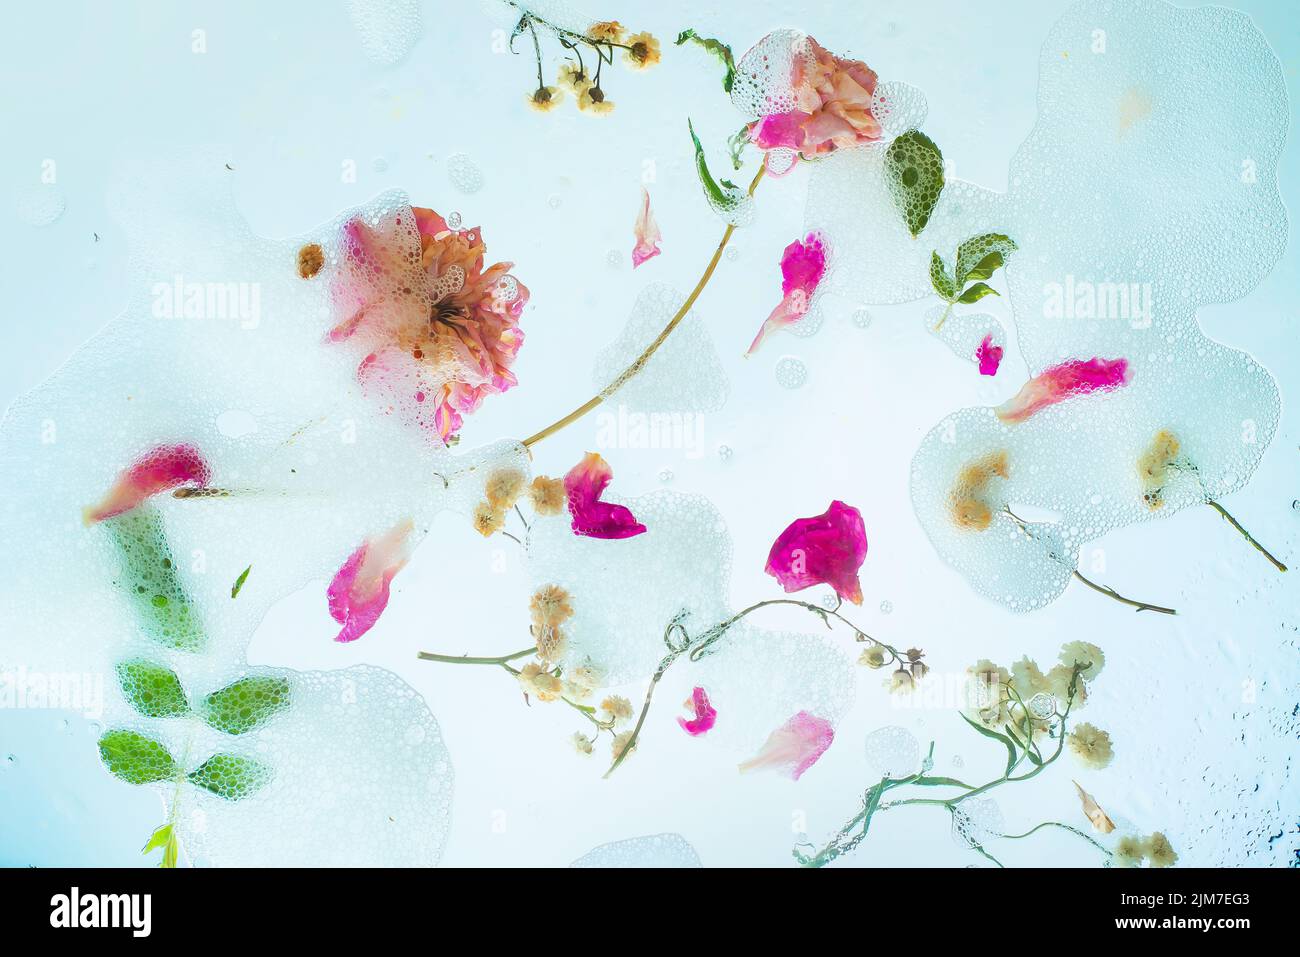 Caos floral, espuma de jabón, pétalos, flores y hojas, suave cabecera, pureza y ligereza Foto de stock